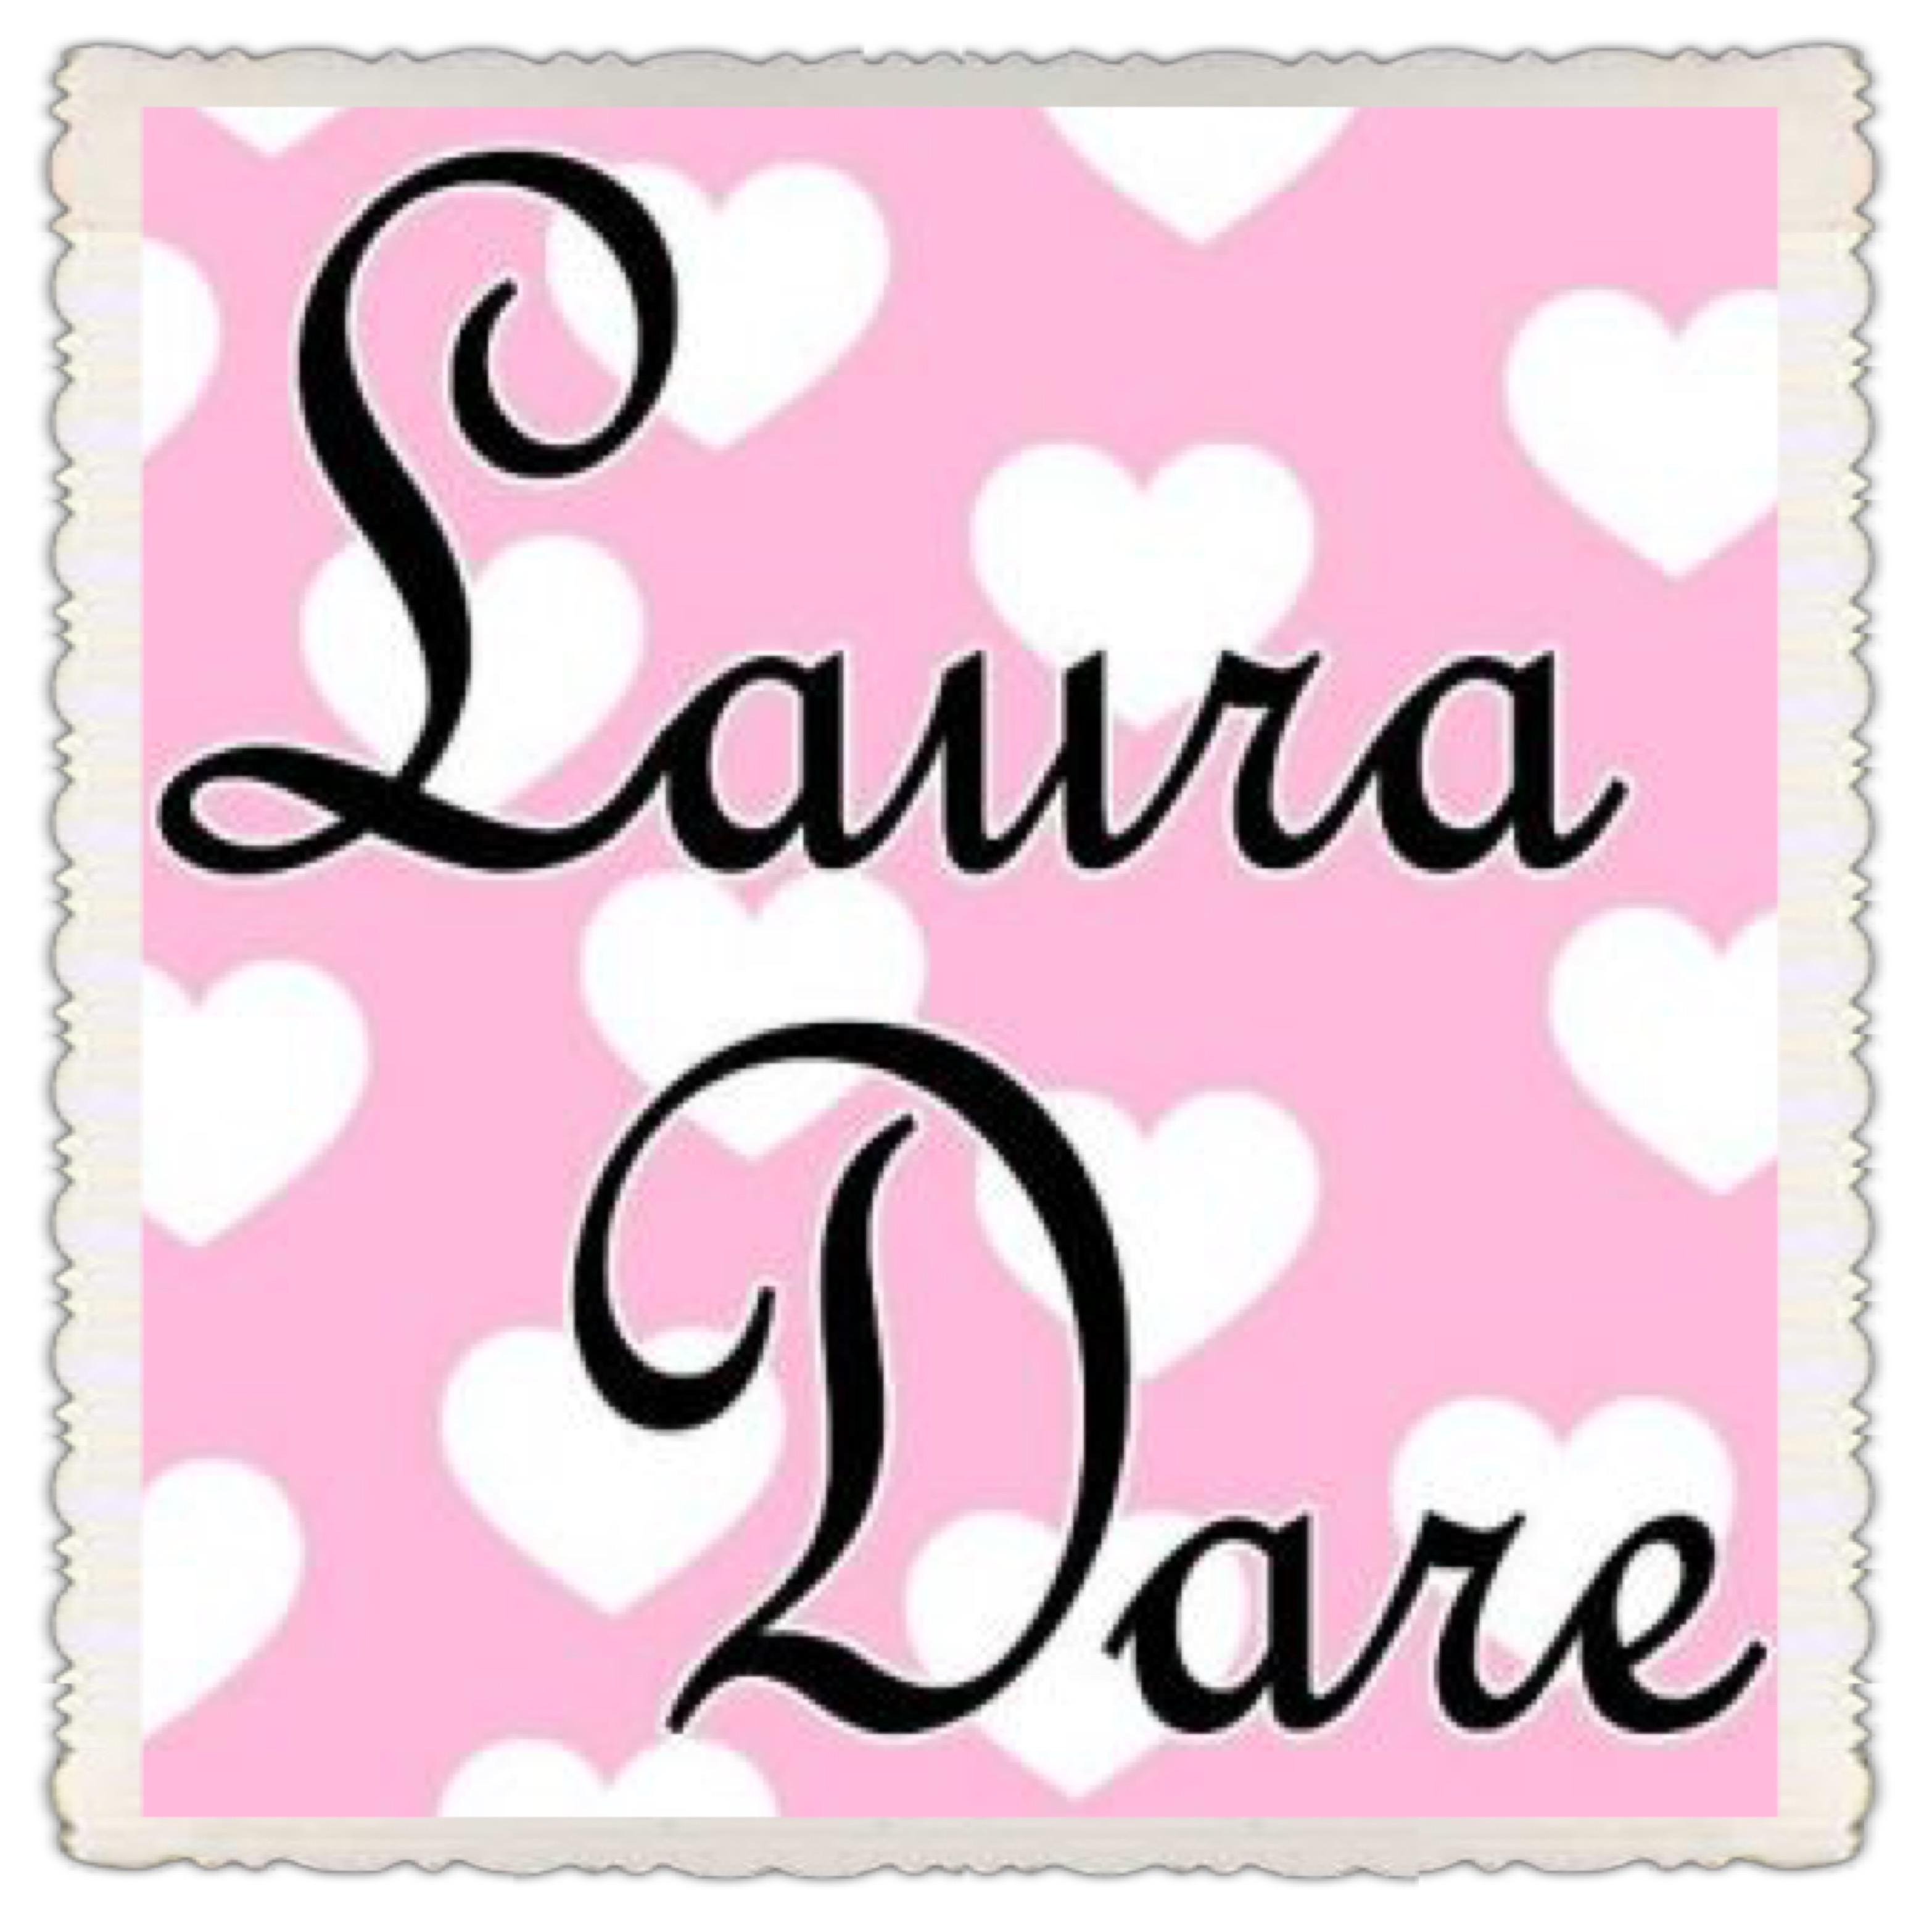 Laura dare